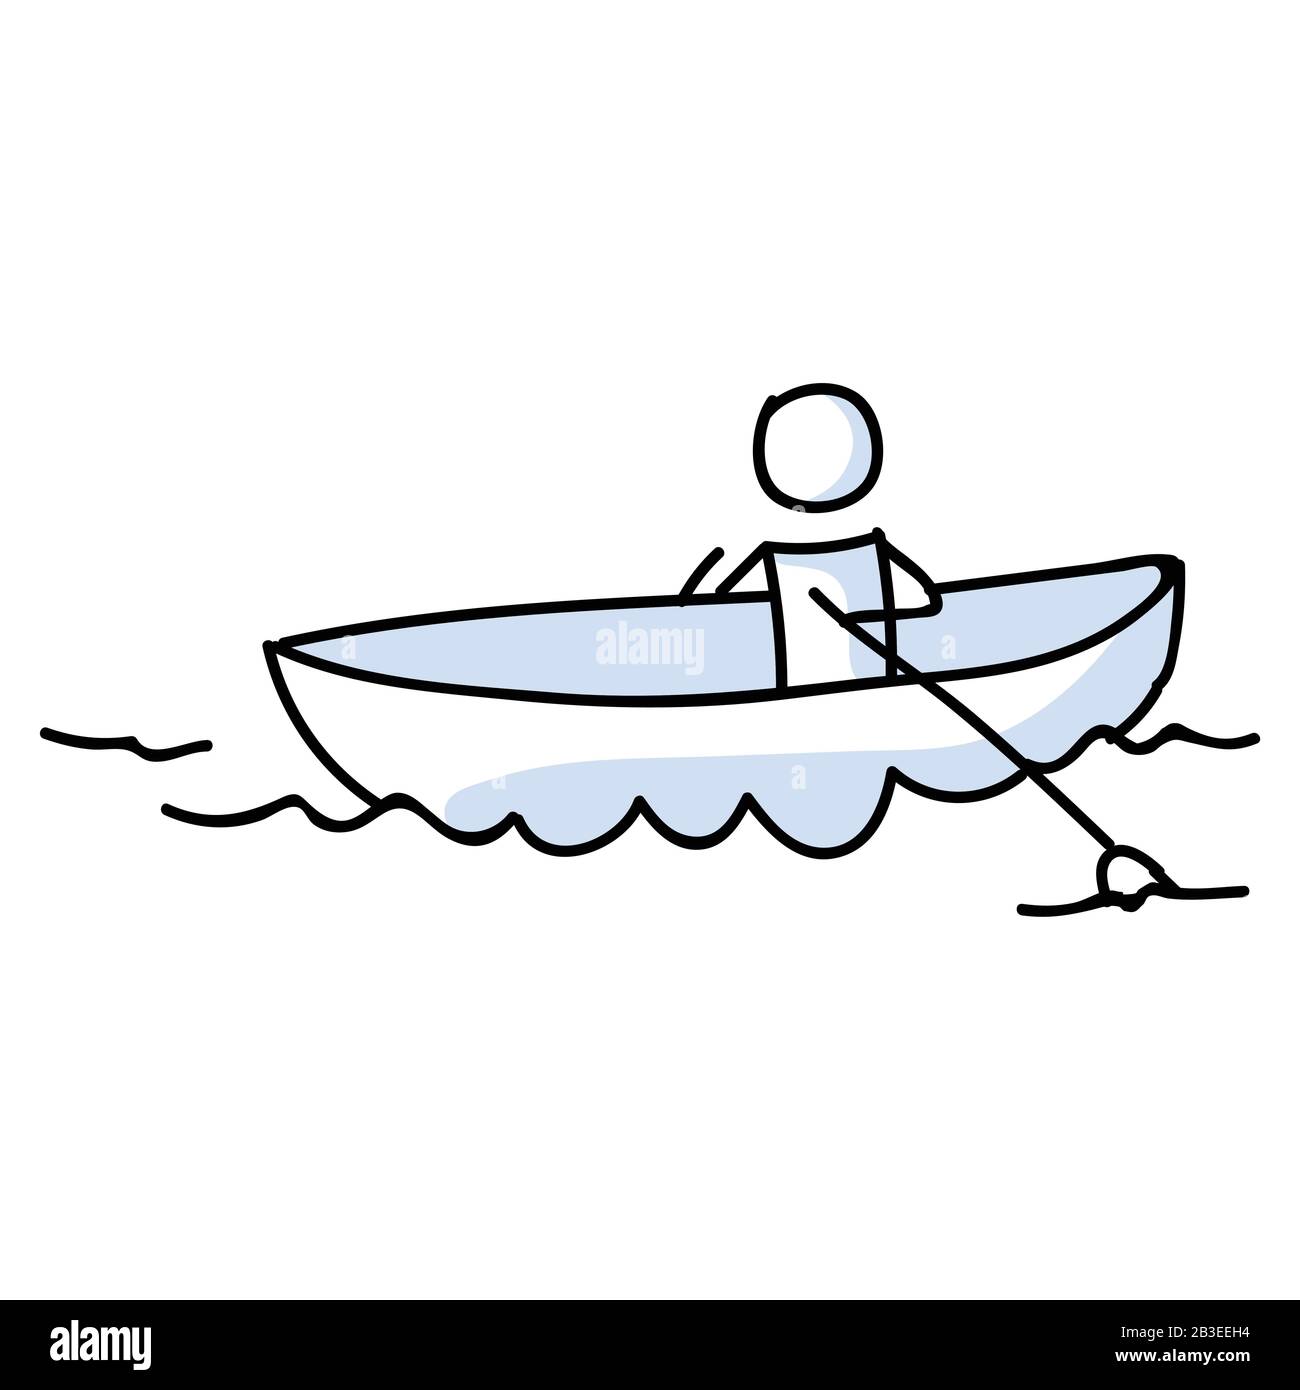 Stick figure boat immagini e fotografie stock ad alta risoluzione - Alamy